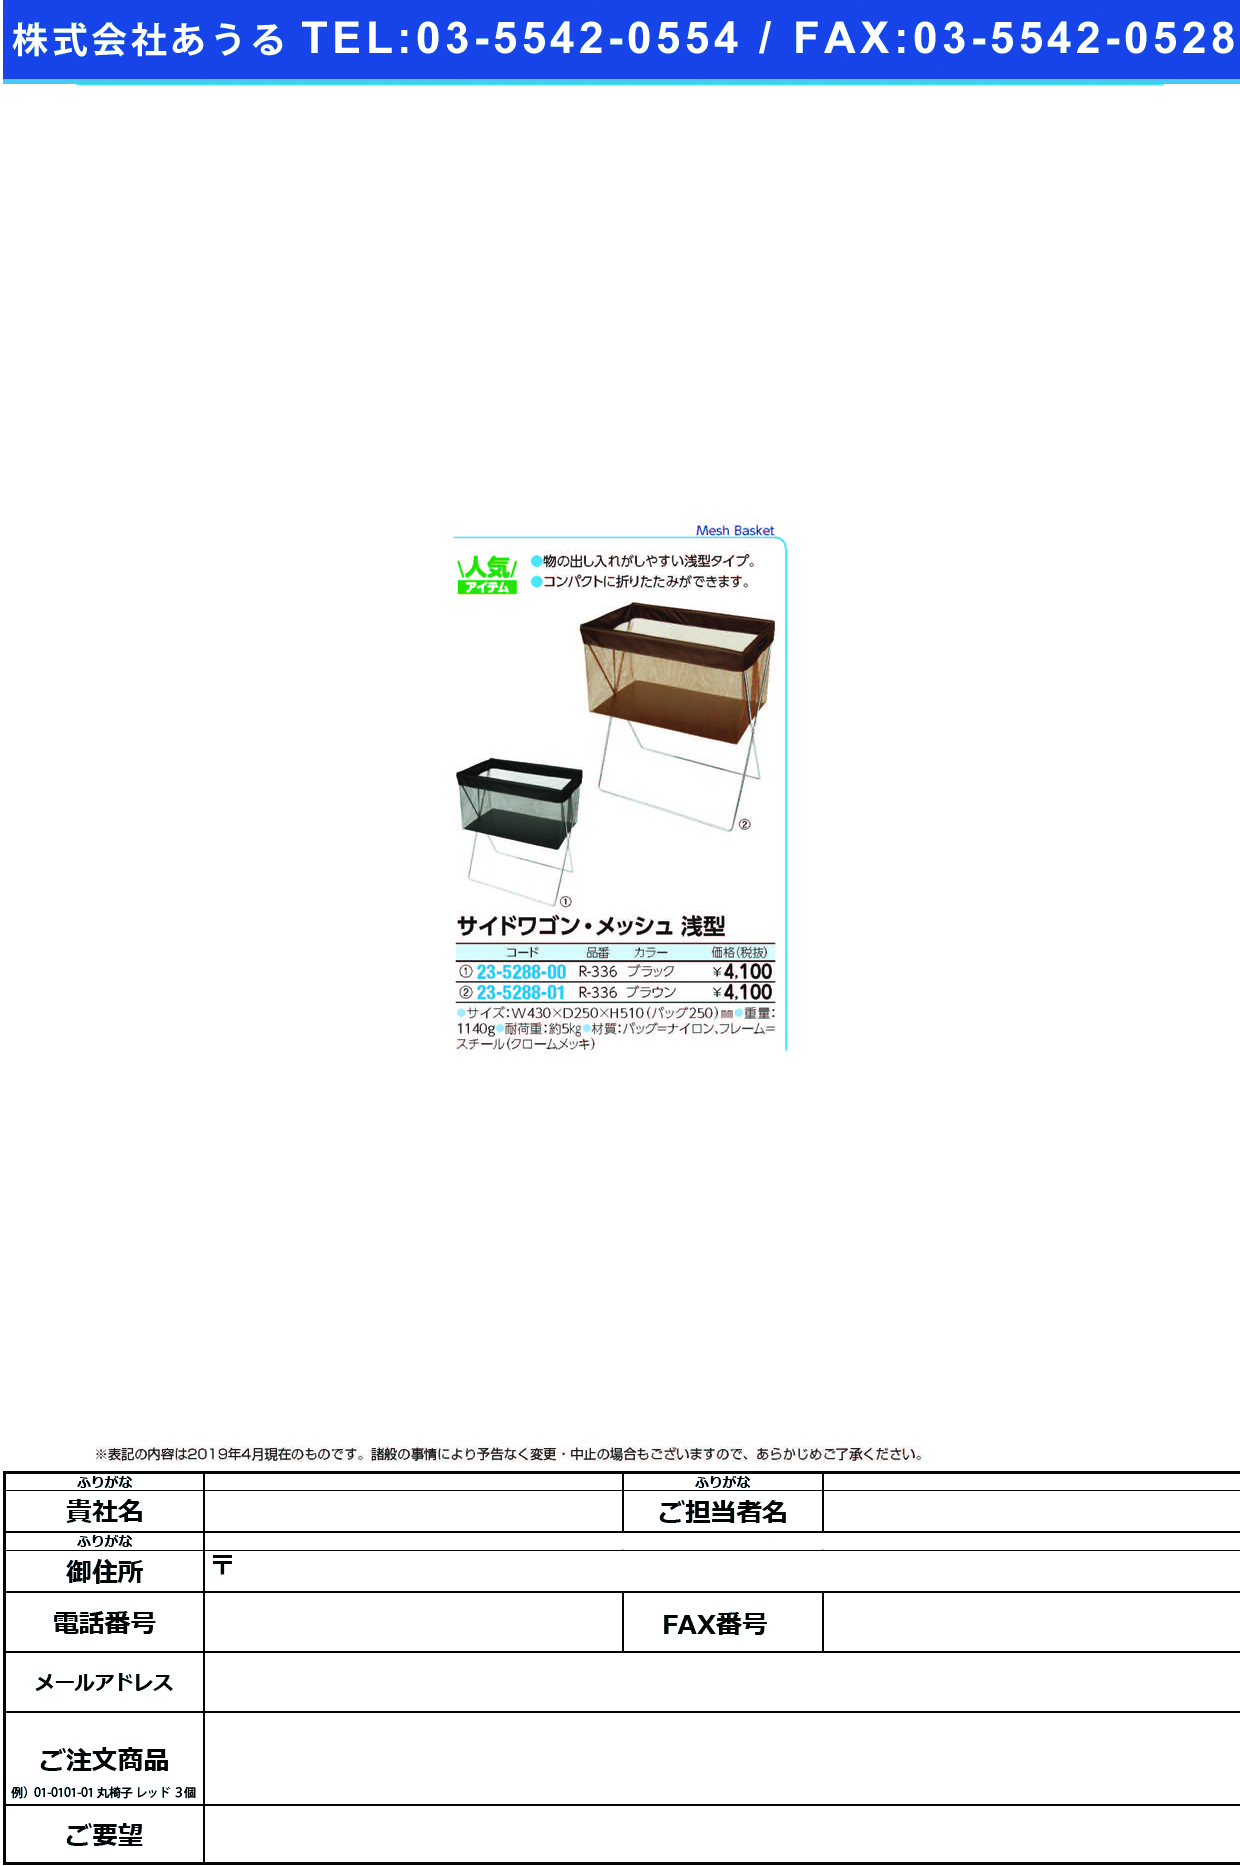 (23-5288-01)サイドワゴン・メッシュ浅型 R-336(ﾌﾞﾗｳﾝ) ｻｲﾄﾞﾜｺﾞﾝﾒｯｼｭｱｻｶﾞﾀ【1個単位】【2019年カタログ商品】